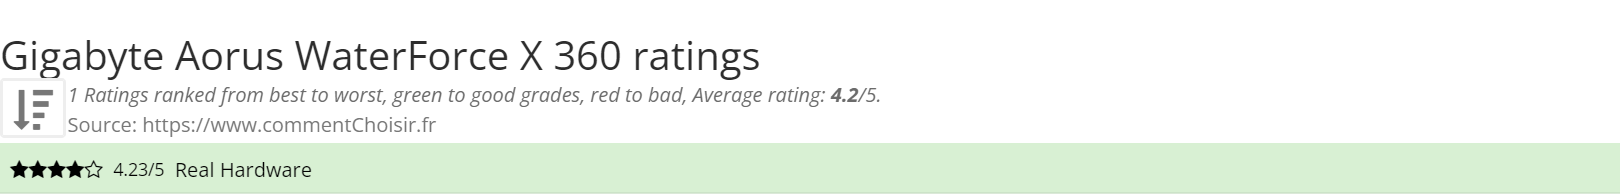 Ratings Gigabyte Aorus WaterForce X 360